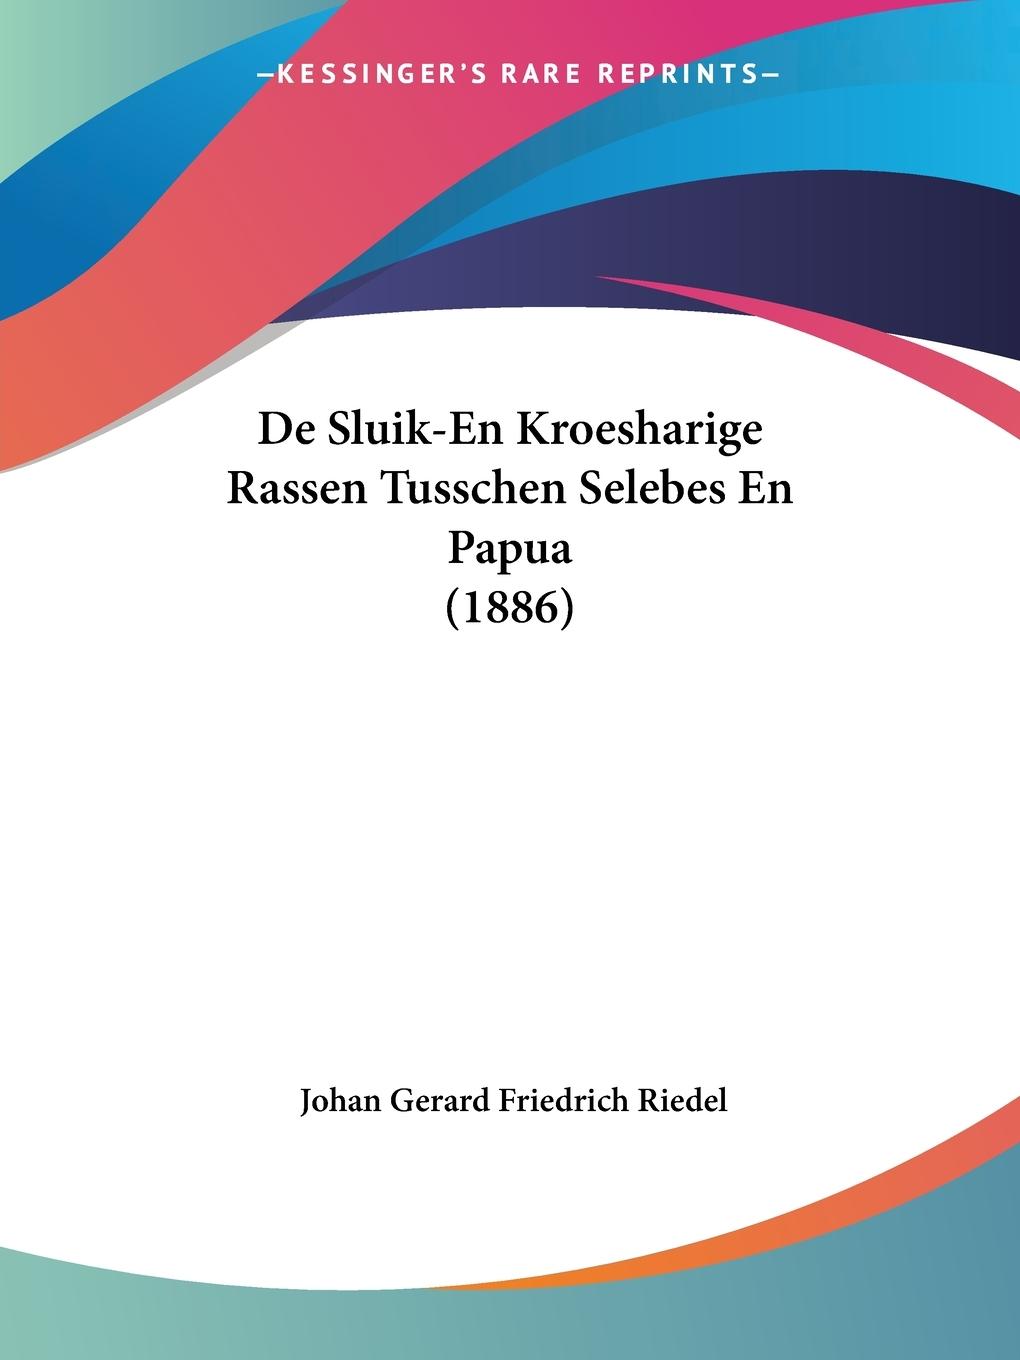 De Sluik-En Kroesharige Rassen Tusschen Selebes En Papua (1886) - Riedel, Johan Gerard Friedrich